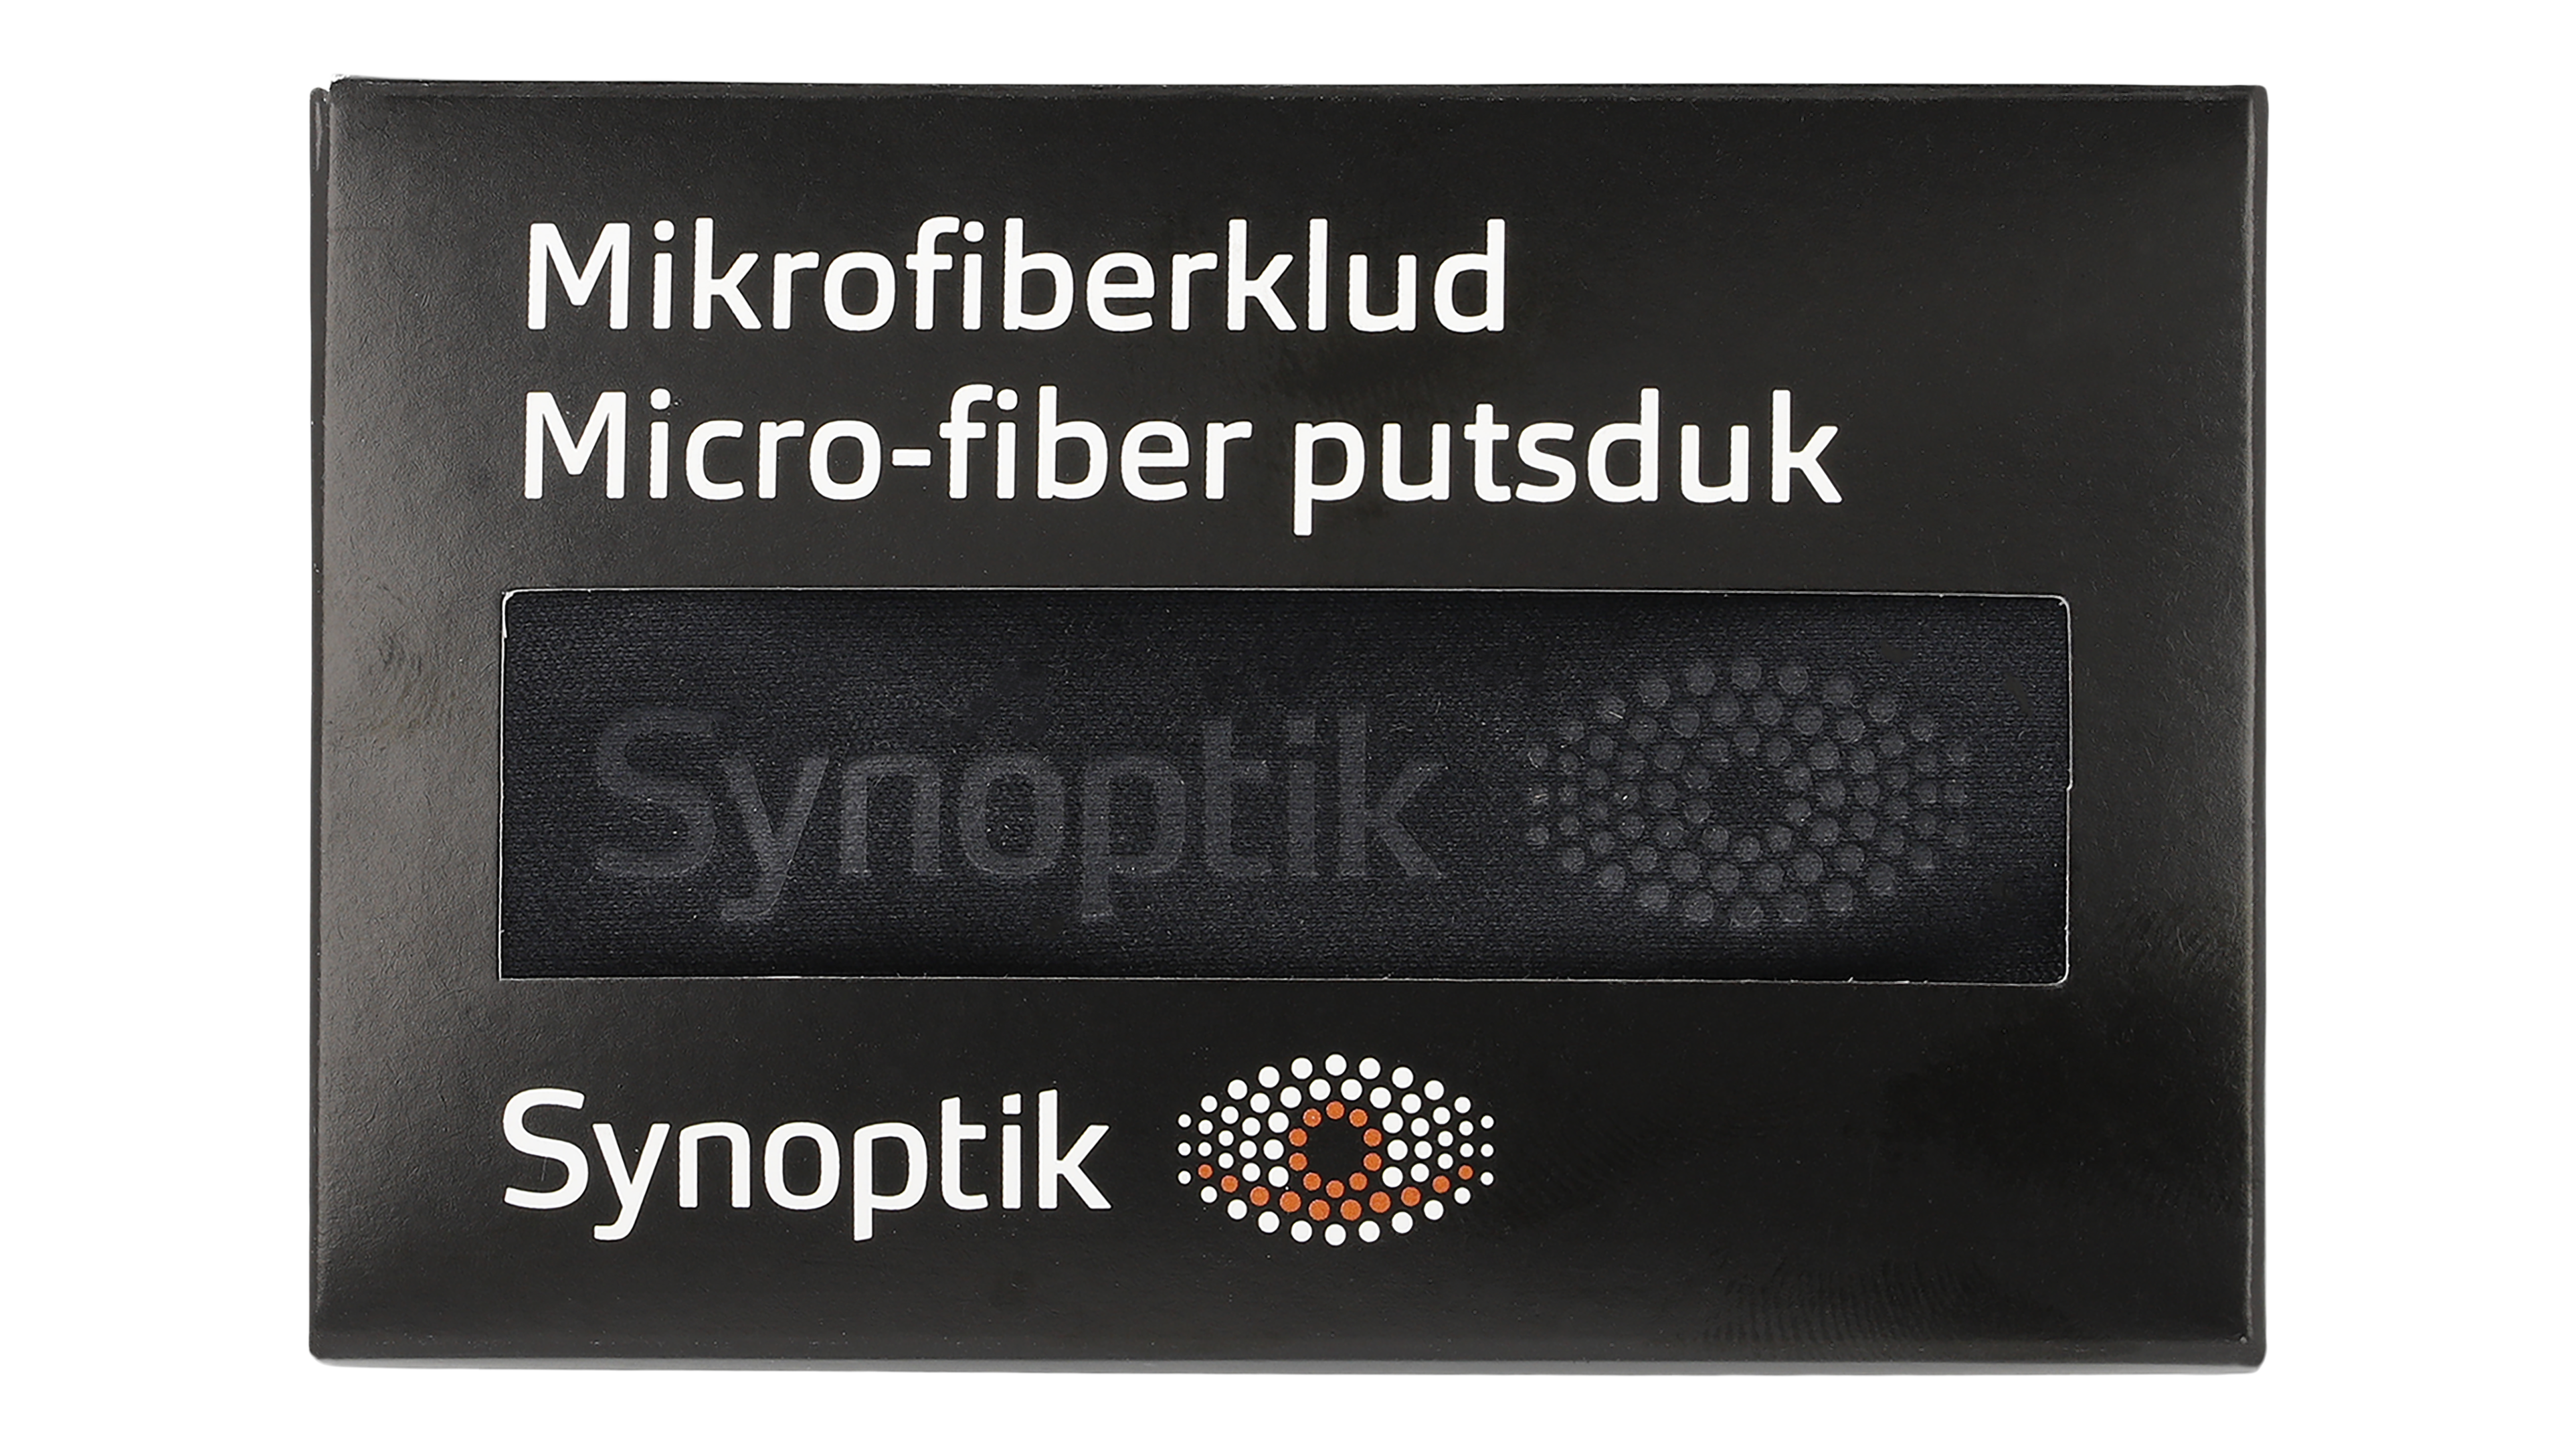 [products.image.front] Tilbehør Mikrofiberklud 1 stk.